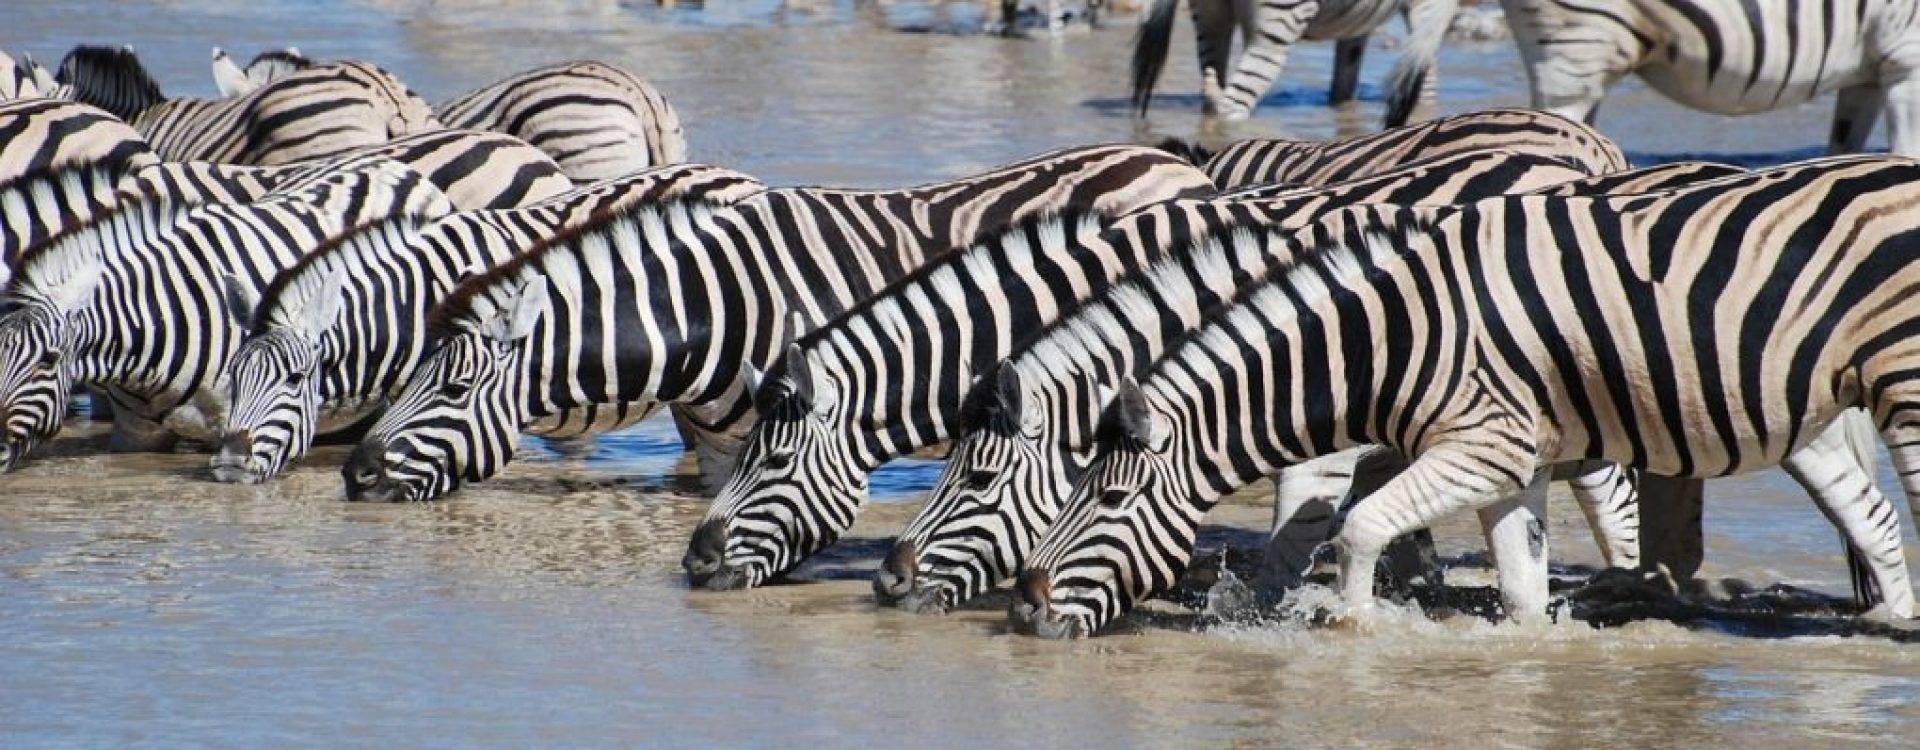 Tanzanija - Zebre na pojilištu